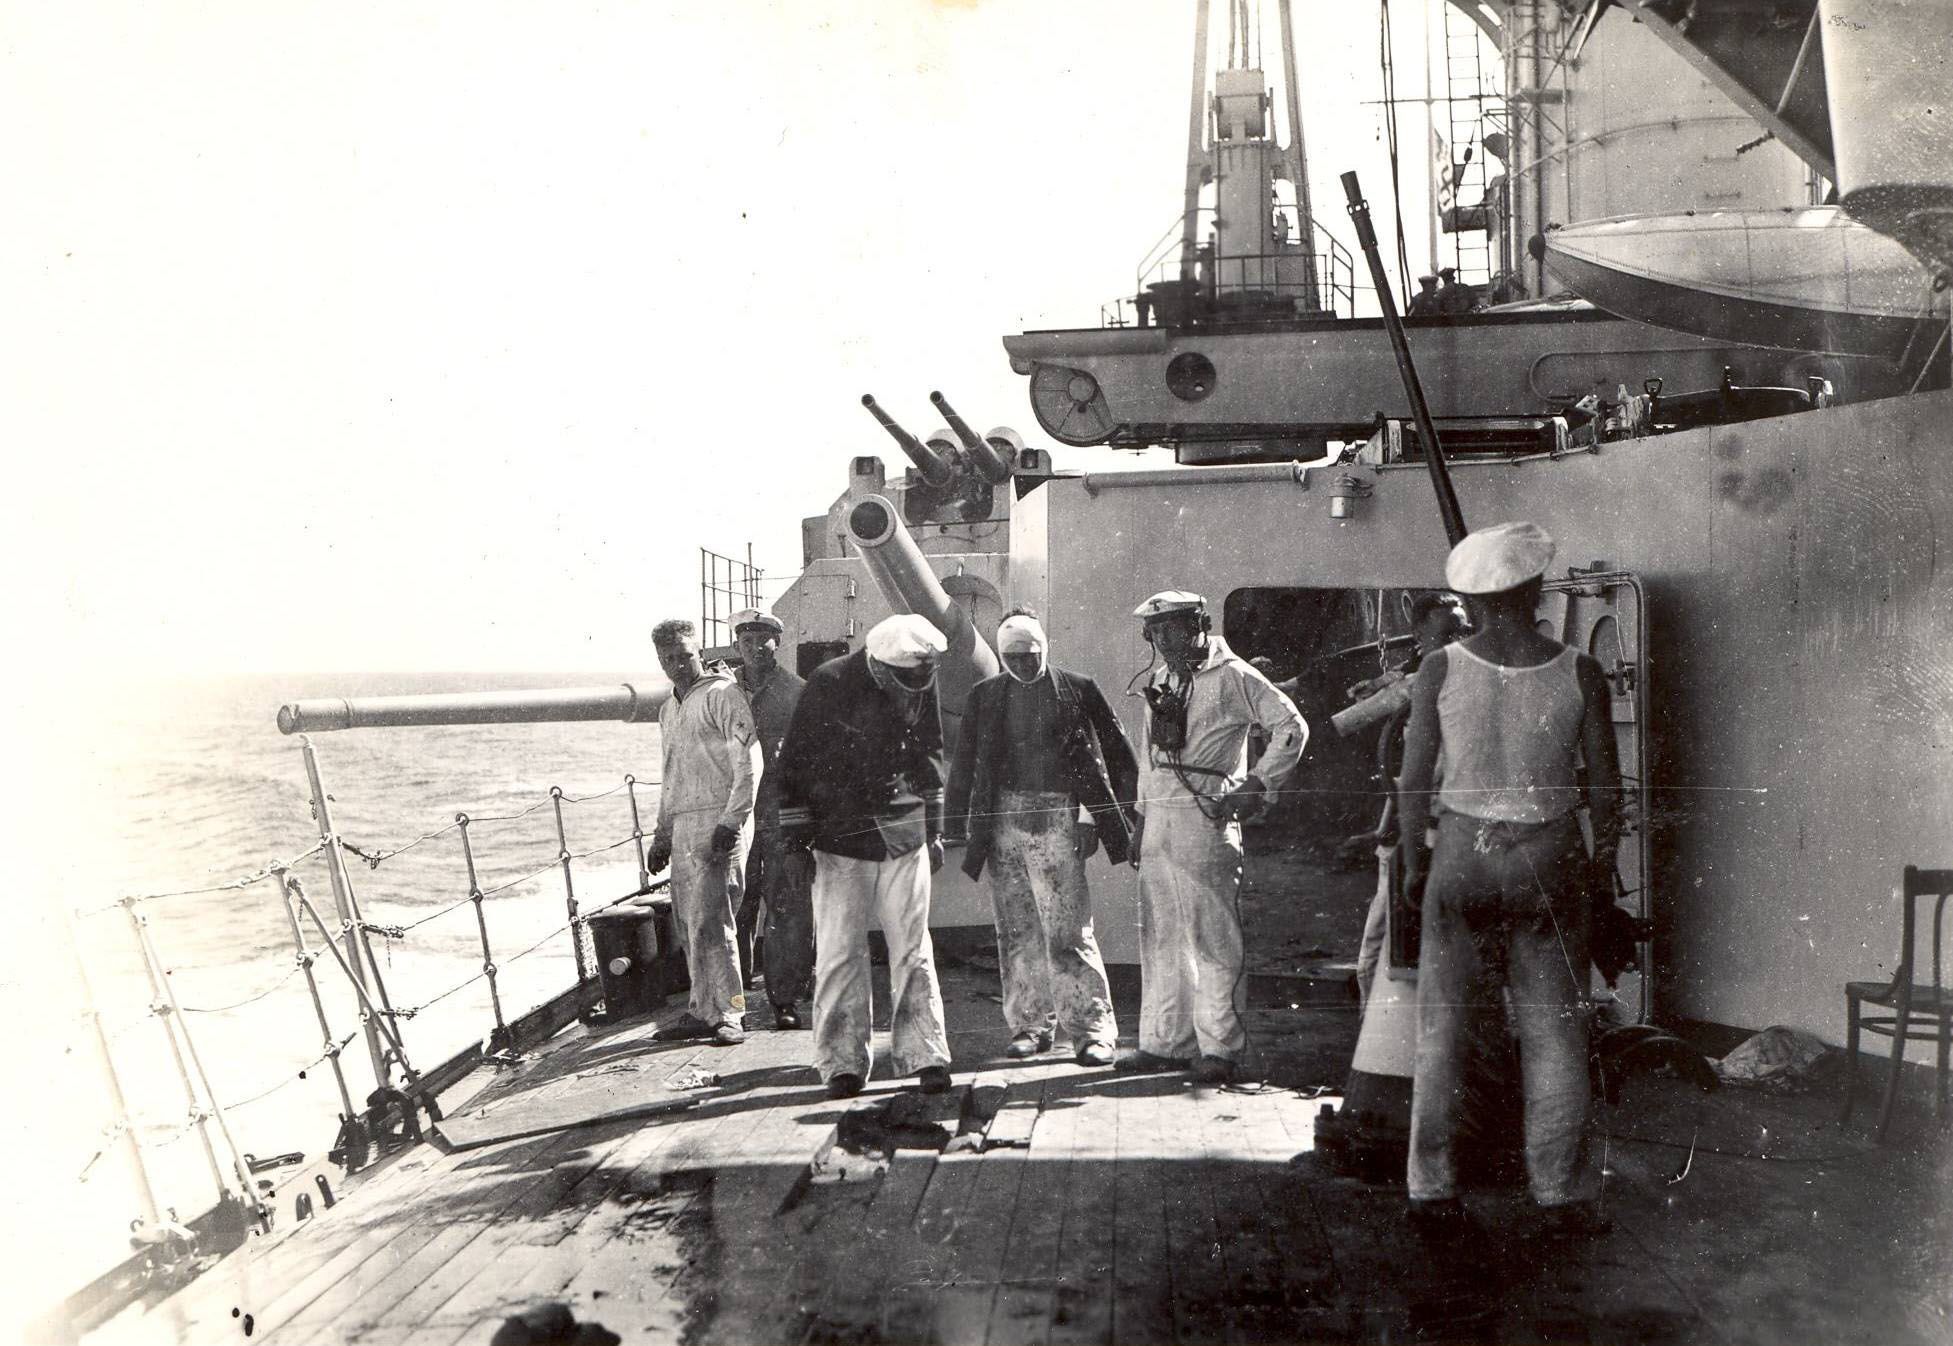 Agujero producido por la bomba en la cubierta del buque.